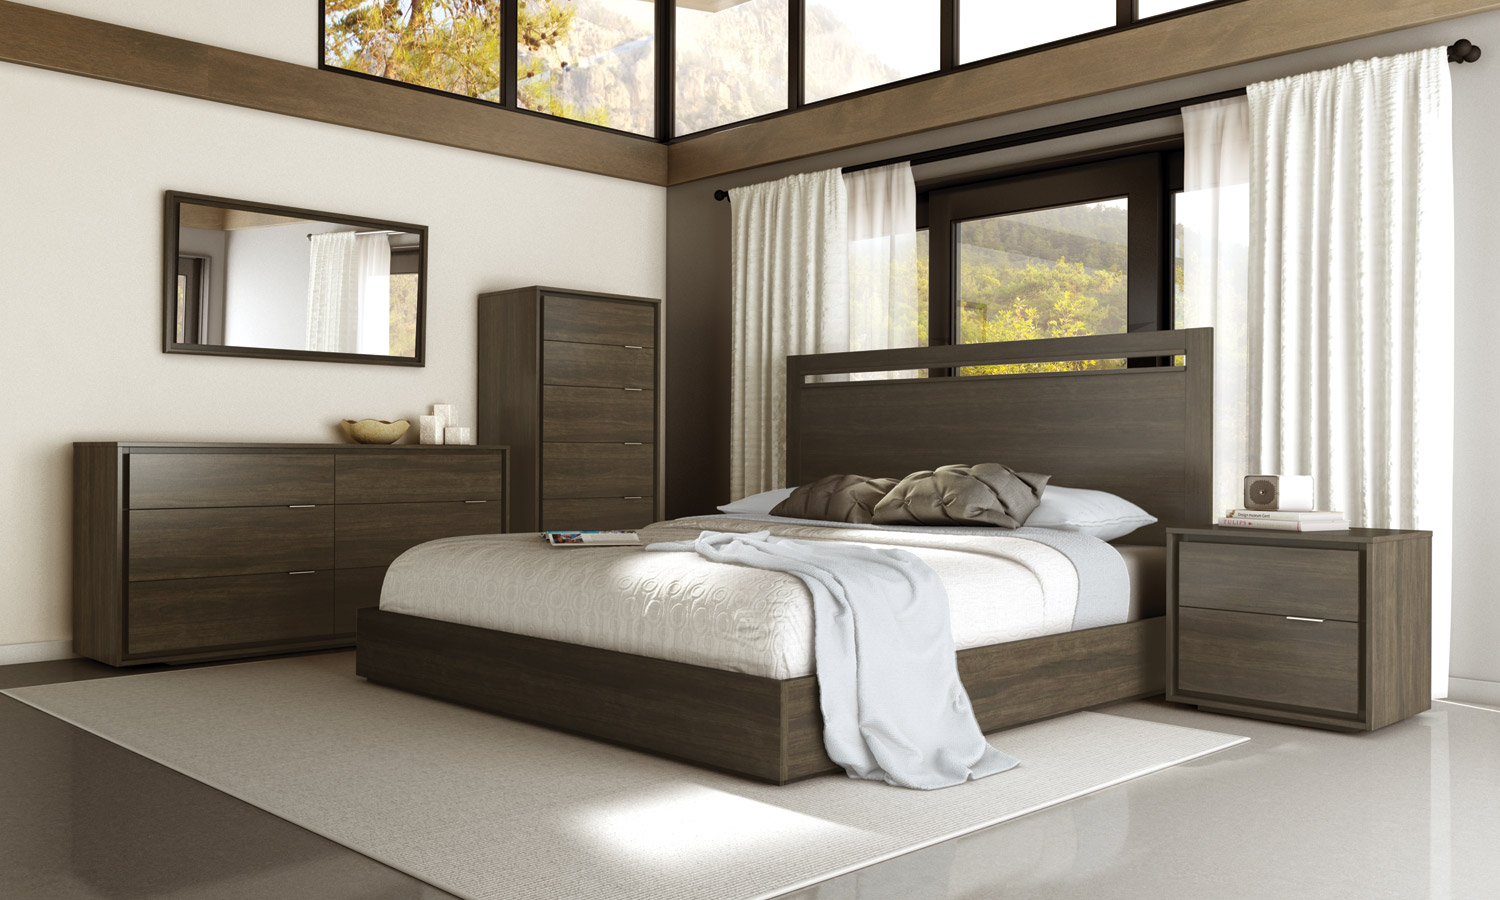 florence bedroom set at value city furniture